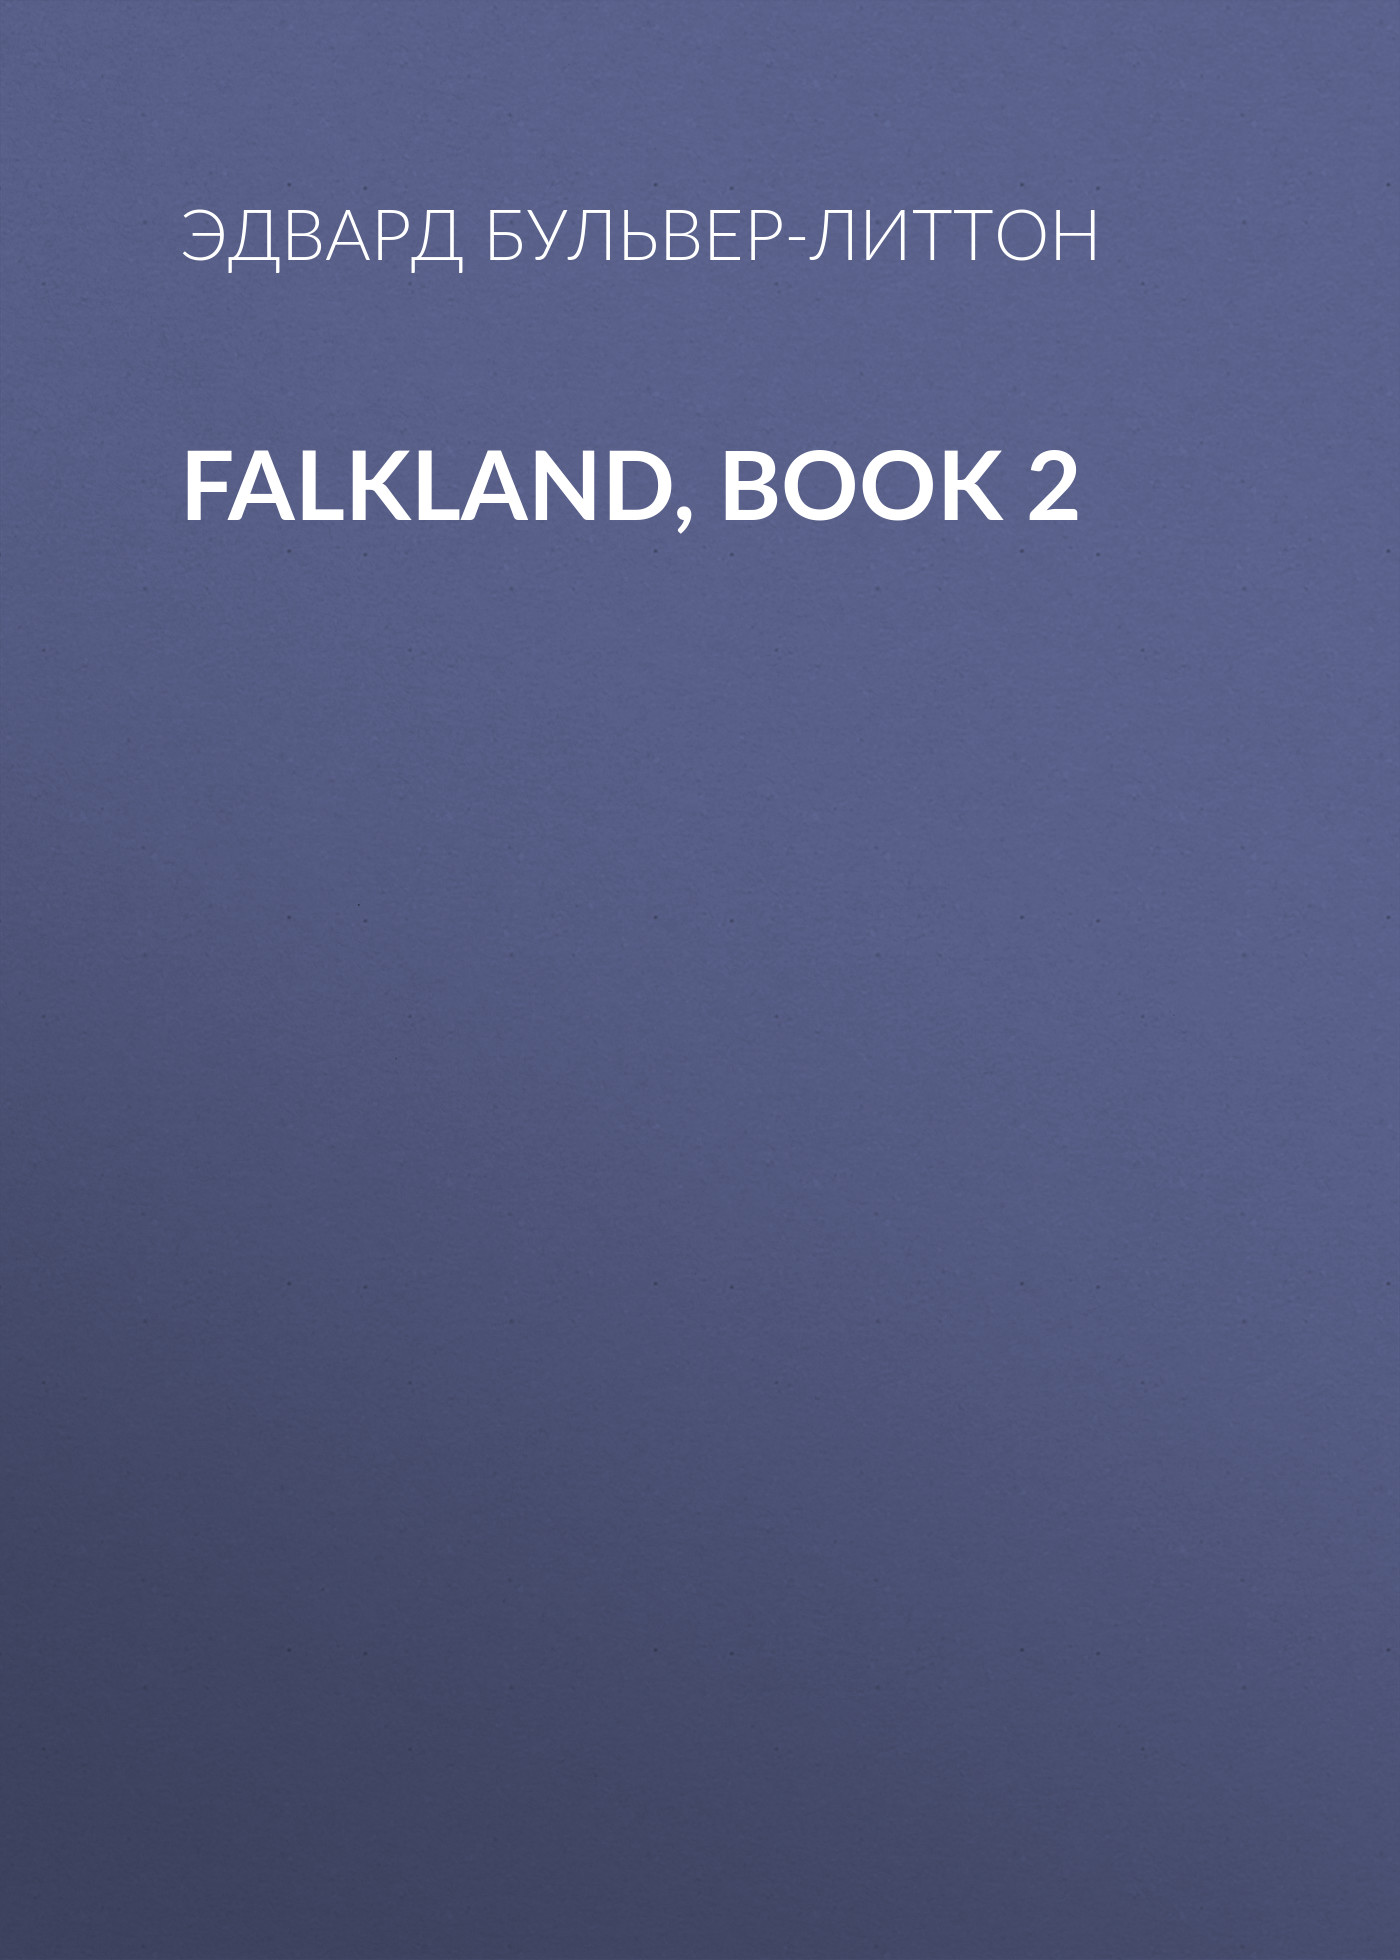 Книга Falkland, Book 2 из серии , созданная Эдвард Бульвер-Литтон, может относится к жанру Зарубежная фантастика, Литература 19 века. Стоимость электронной книги Falkland, Book 2 с идентификатором 35008833 составляет 0 руб.